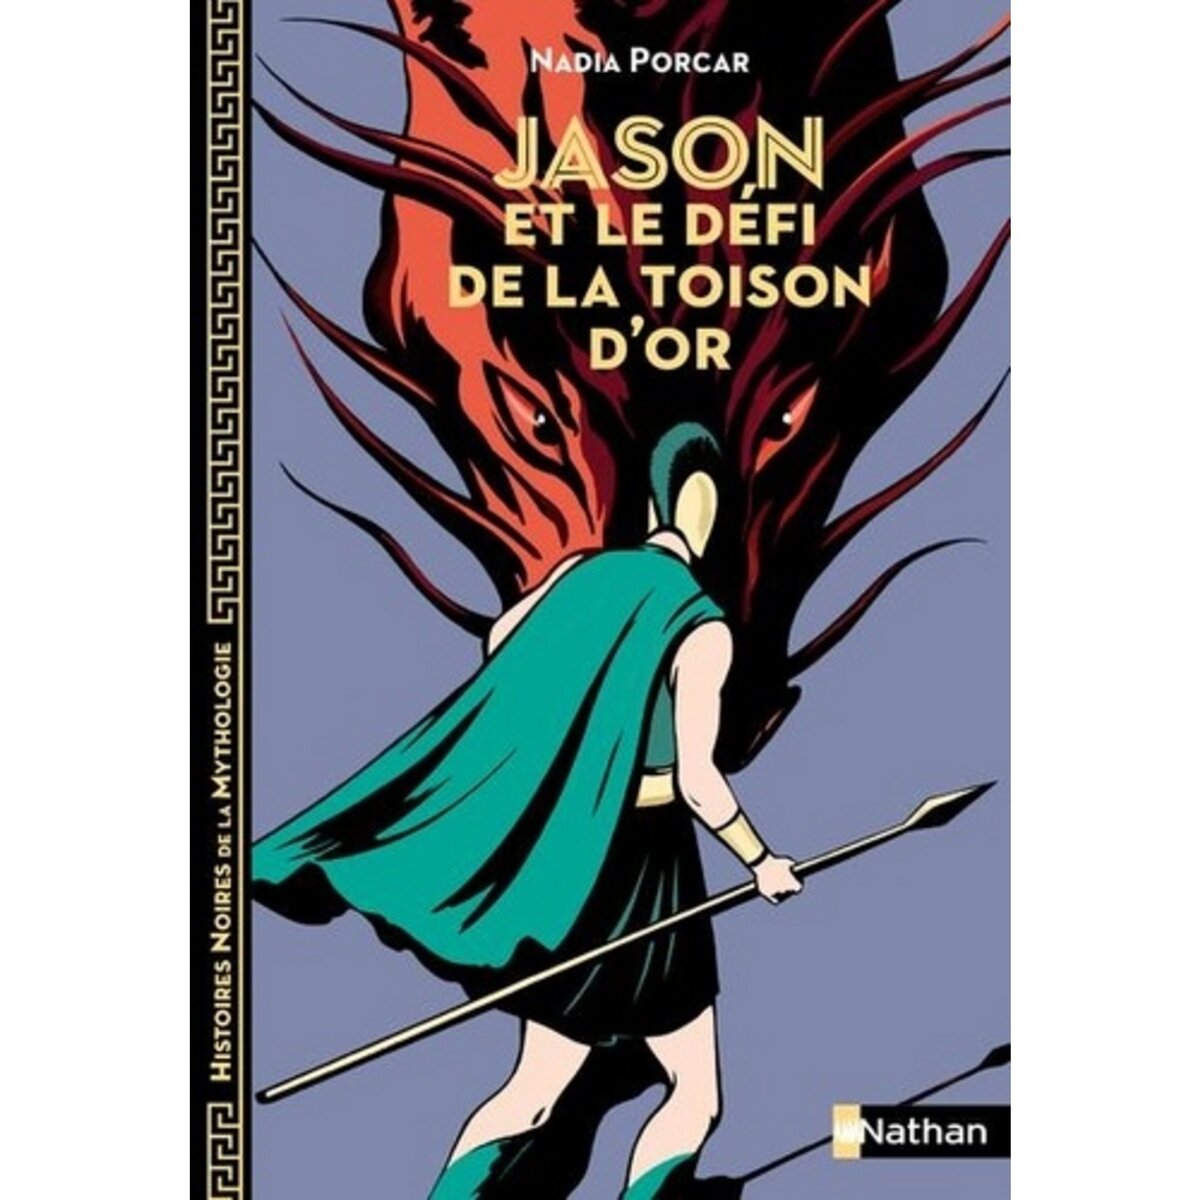  JASON ET LE DEFI DE LA TOISON D'OR, Porcar Nadia